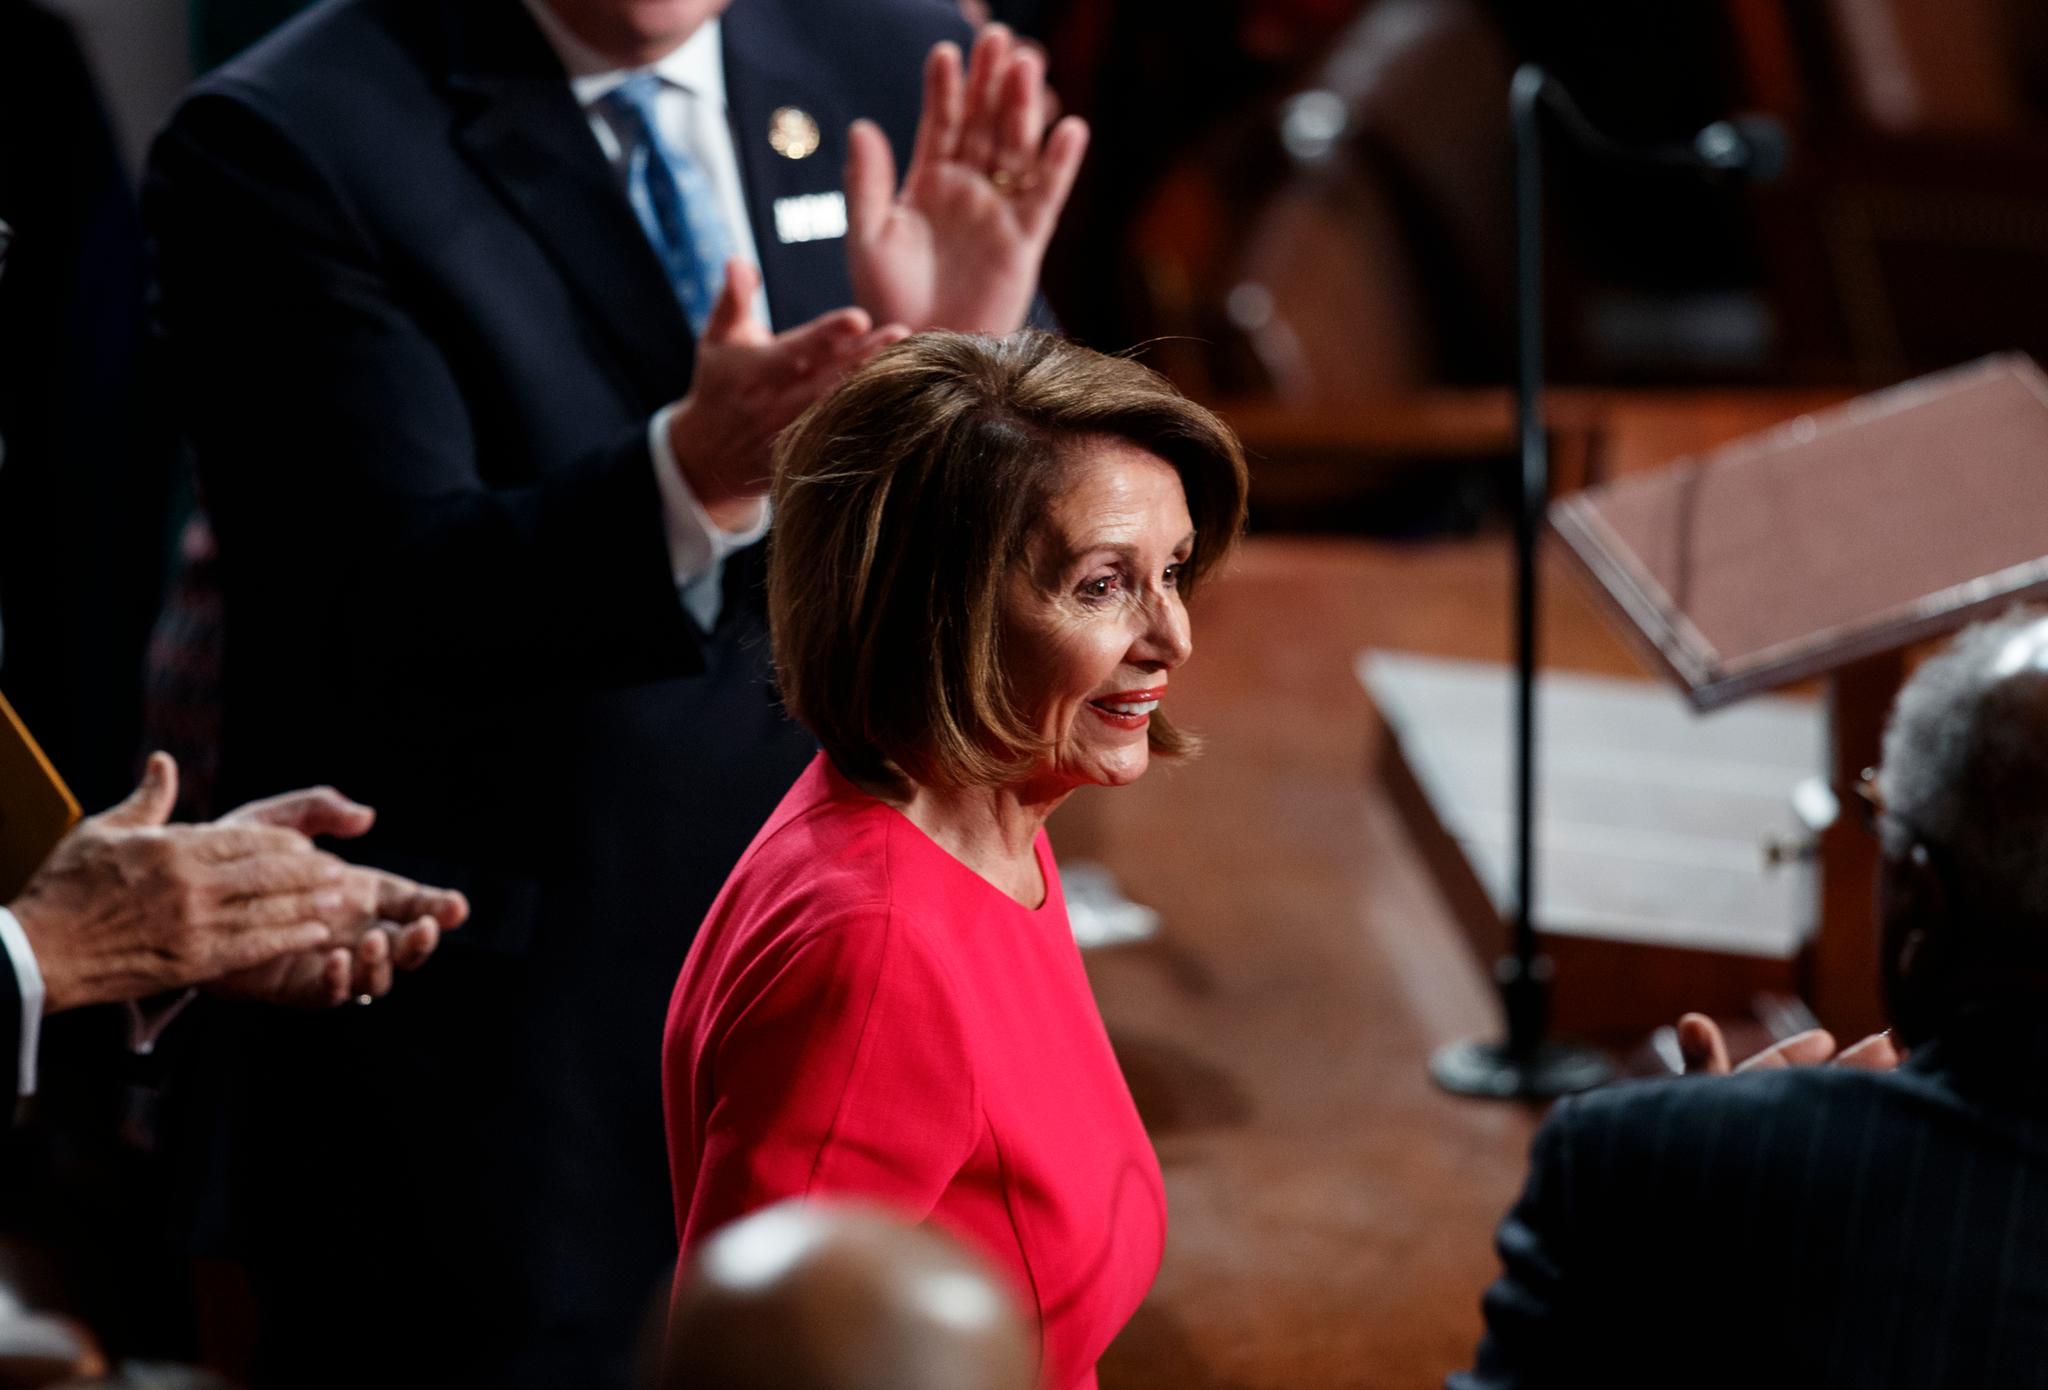 Nancy Pelosi er gjenvalgt som leder av Representantenes hus i den amerikanske Kongressen. Foto: Carolyn Kaster / AP / NTB scanpix